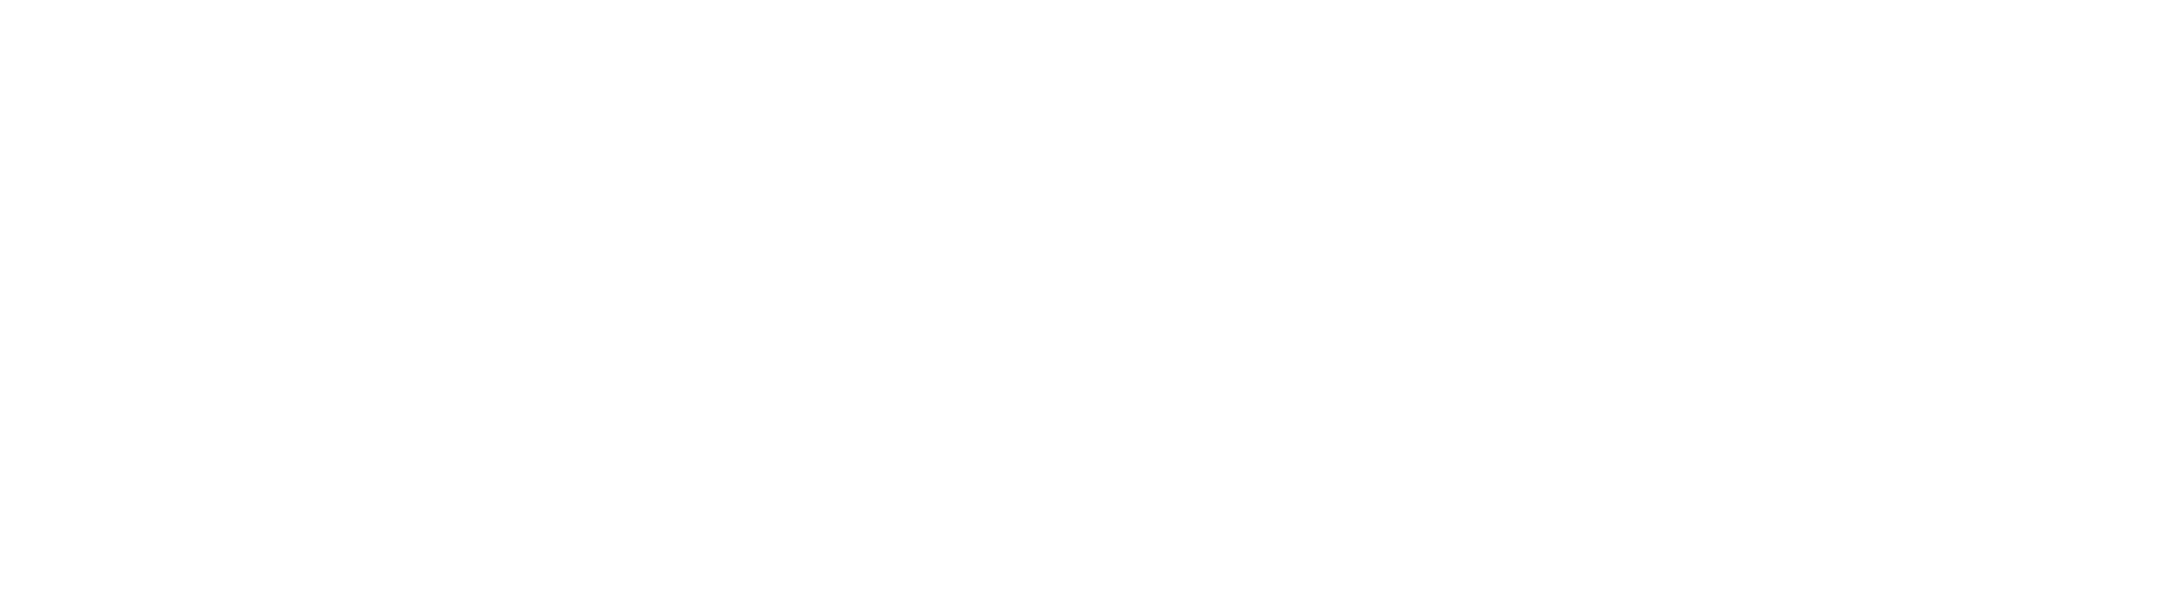 Salon Plein Air, Chasse et Peche de Montreal